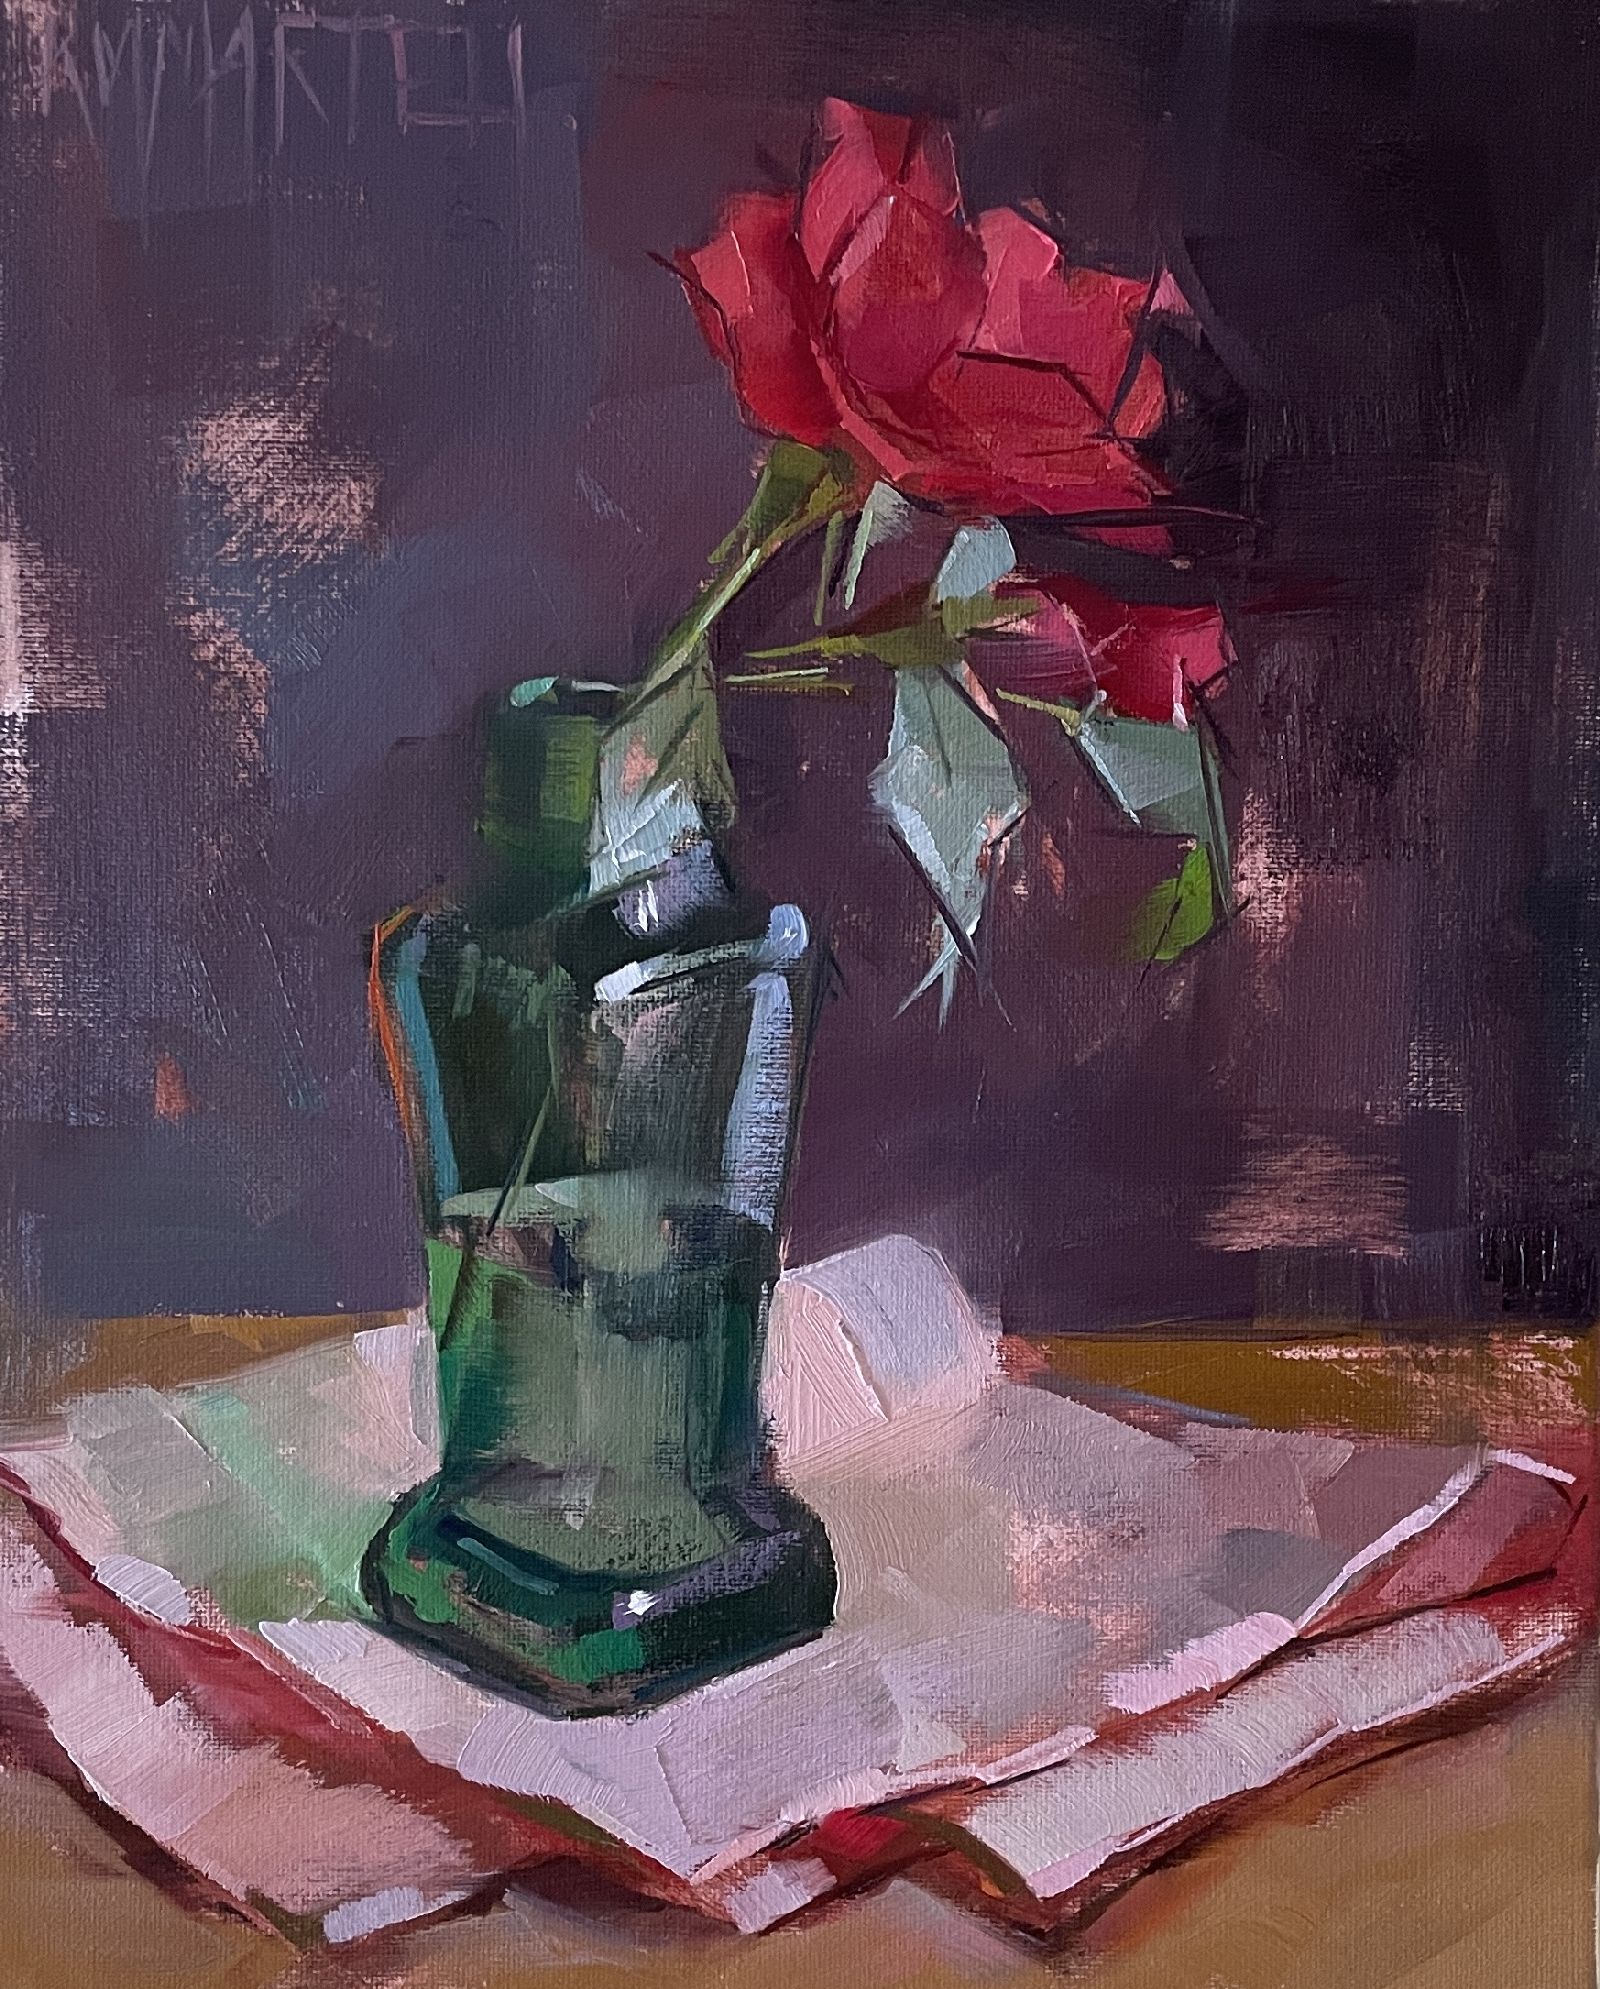 Little Rose by Kayla Martell